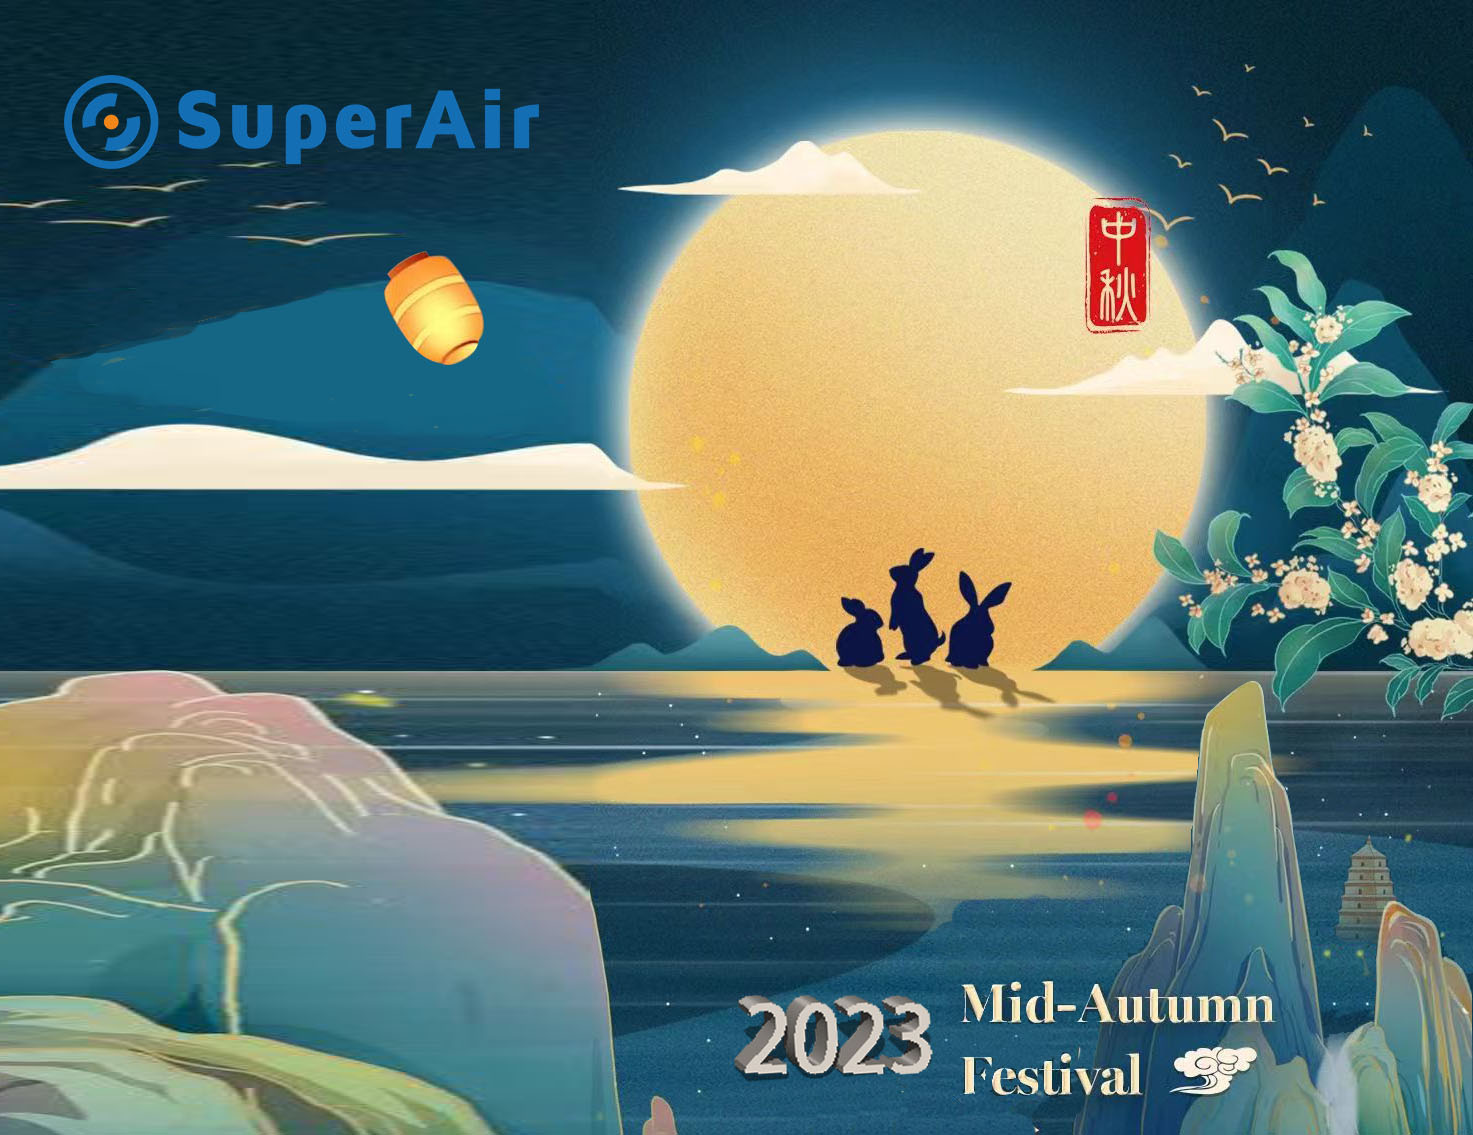 Η SuperAir σας εύχεται καλή γιορτή στα μέσα του φθινοπώρου